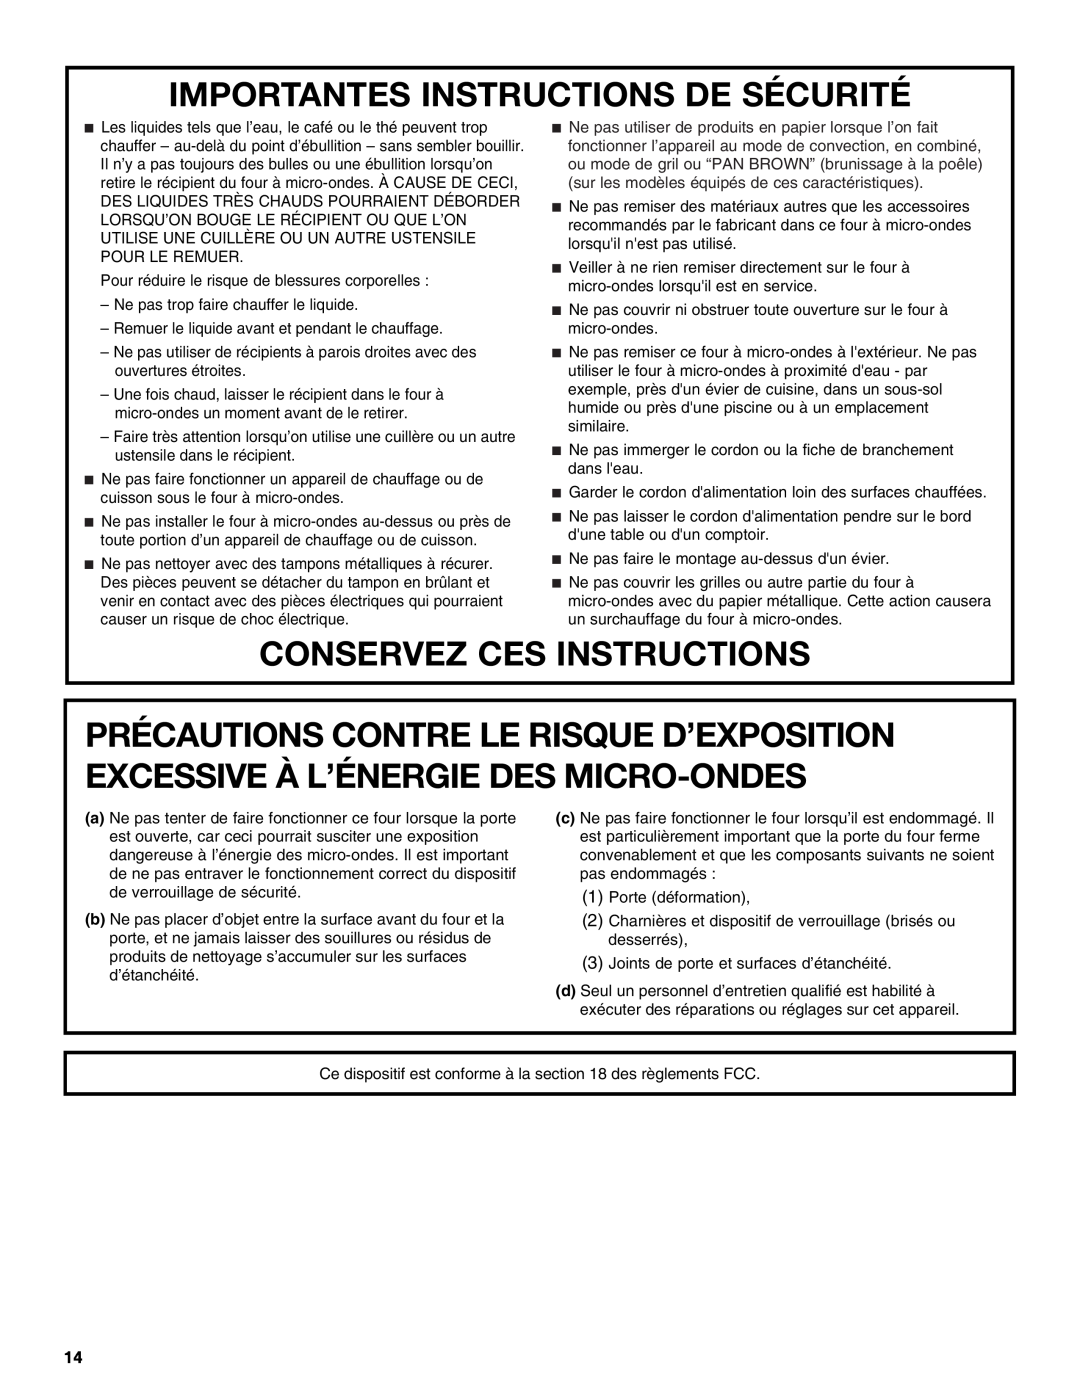 Whirlpool WMC1070 manual Importantes Instructions De Sécurité, Conservez Ces Instructions 